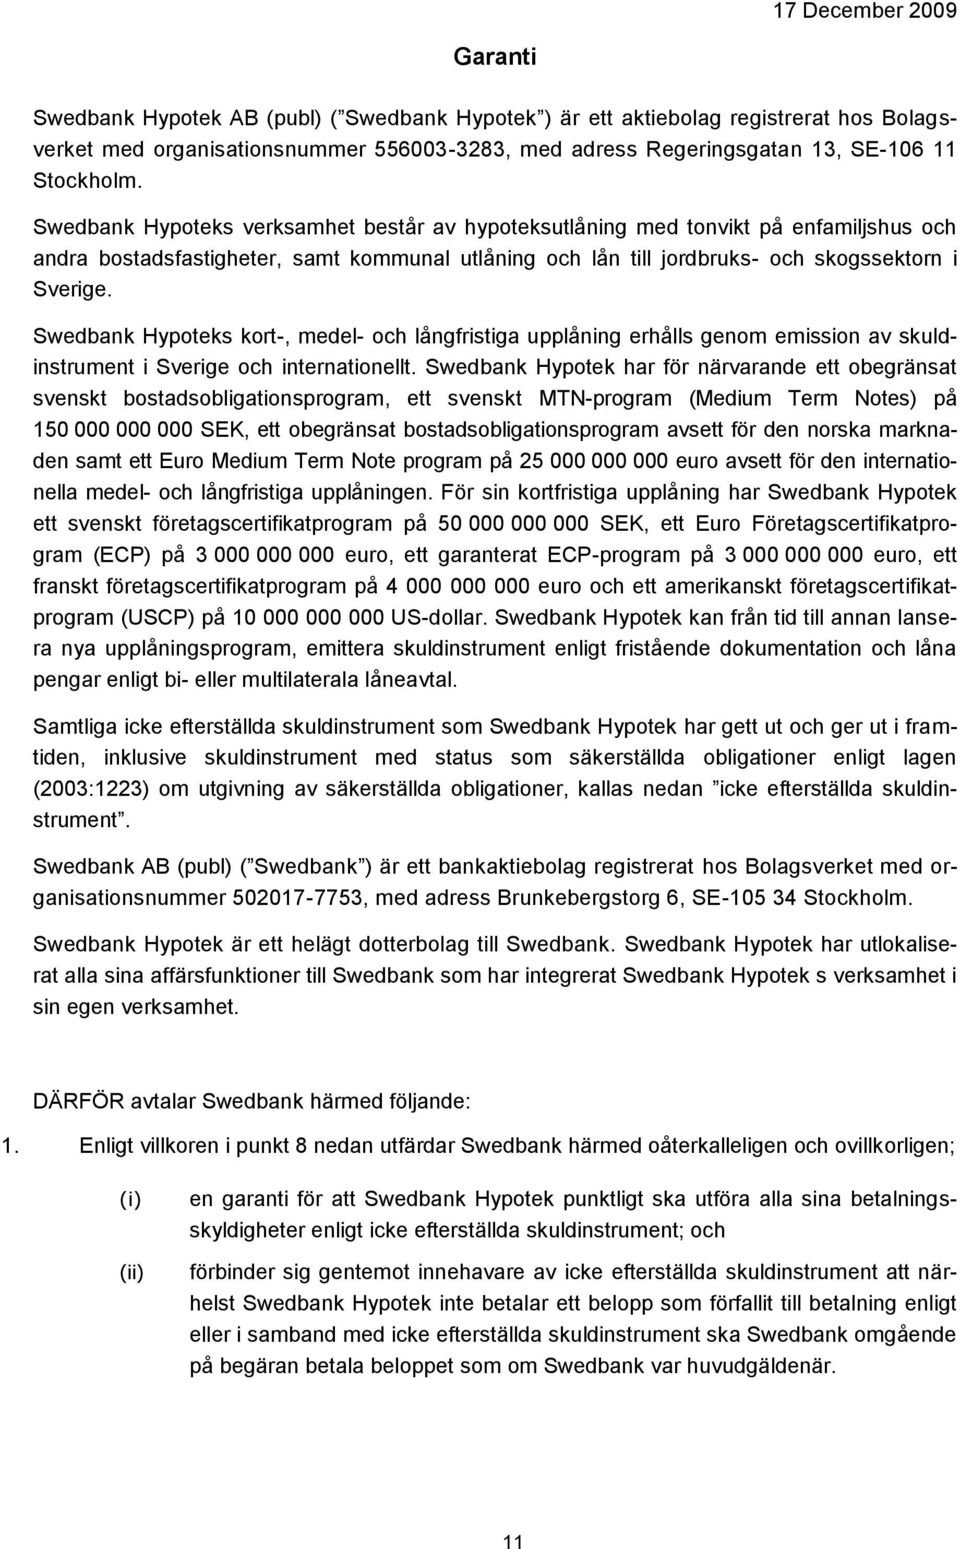 Swedbank Hypoteks kort-, medel- och långfristiga upplåning erhålls genom emission av skuldinstrument i Sverige och internationellt.